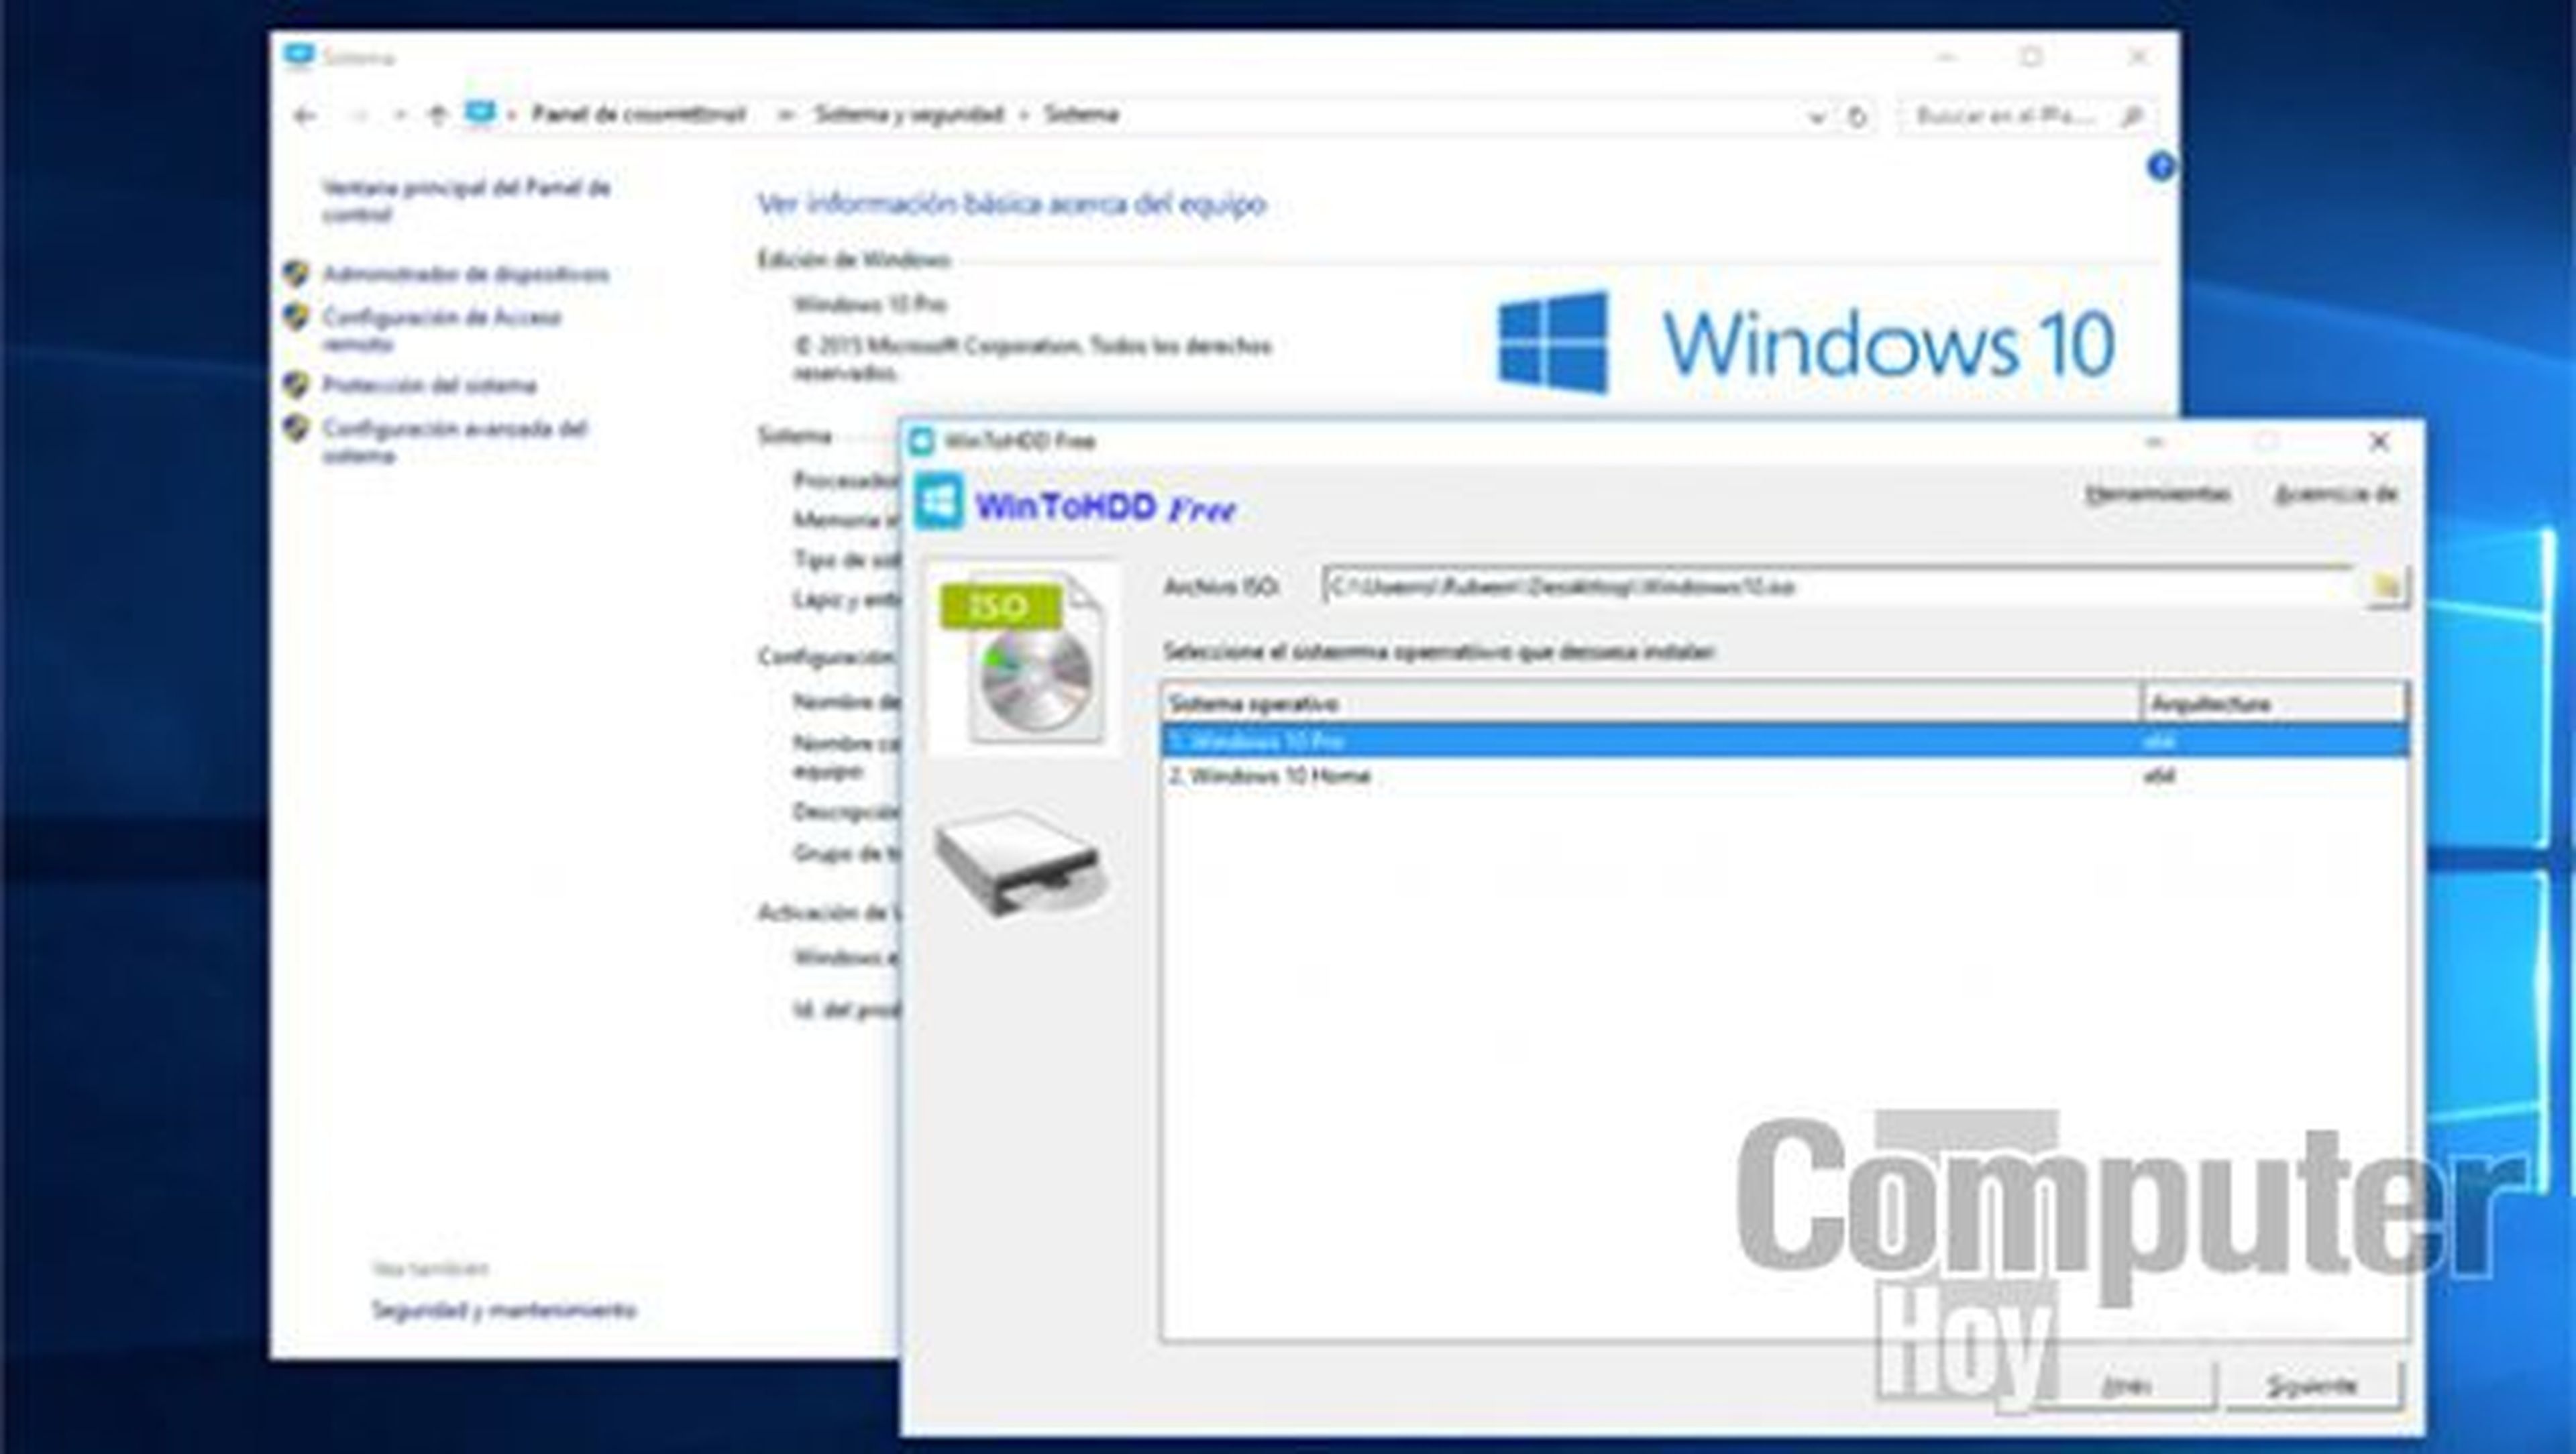 Selecciona la versión de Windows que actualmente tienes instalada en tu PC